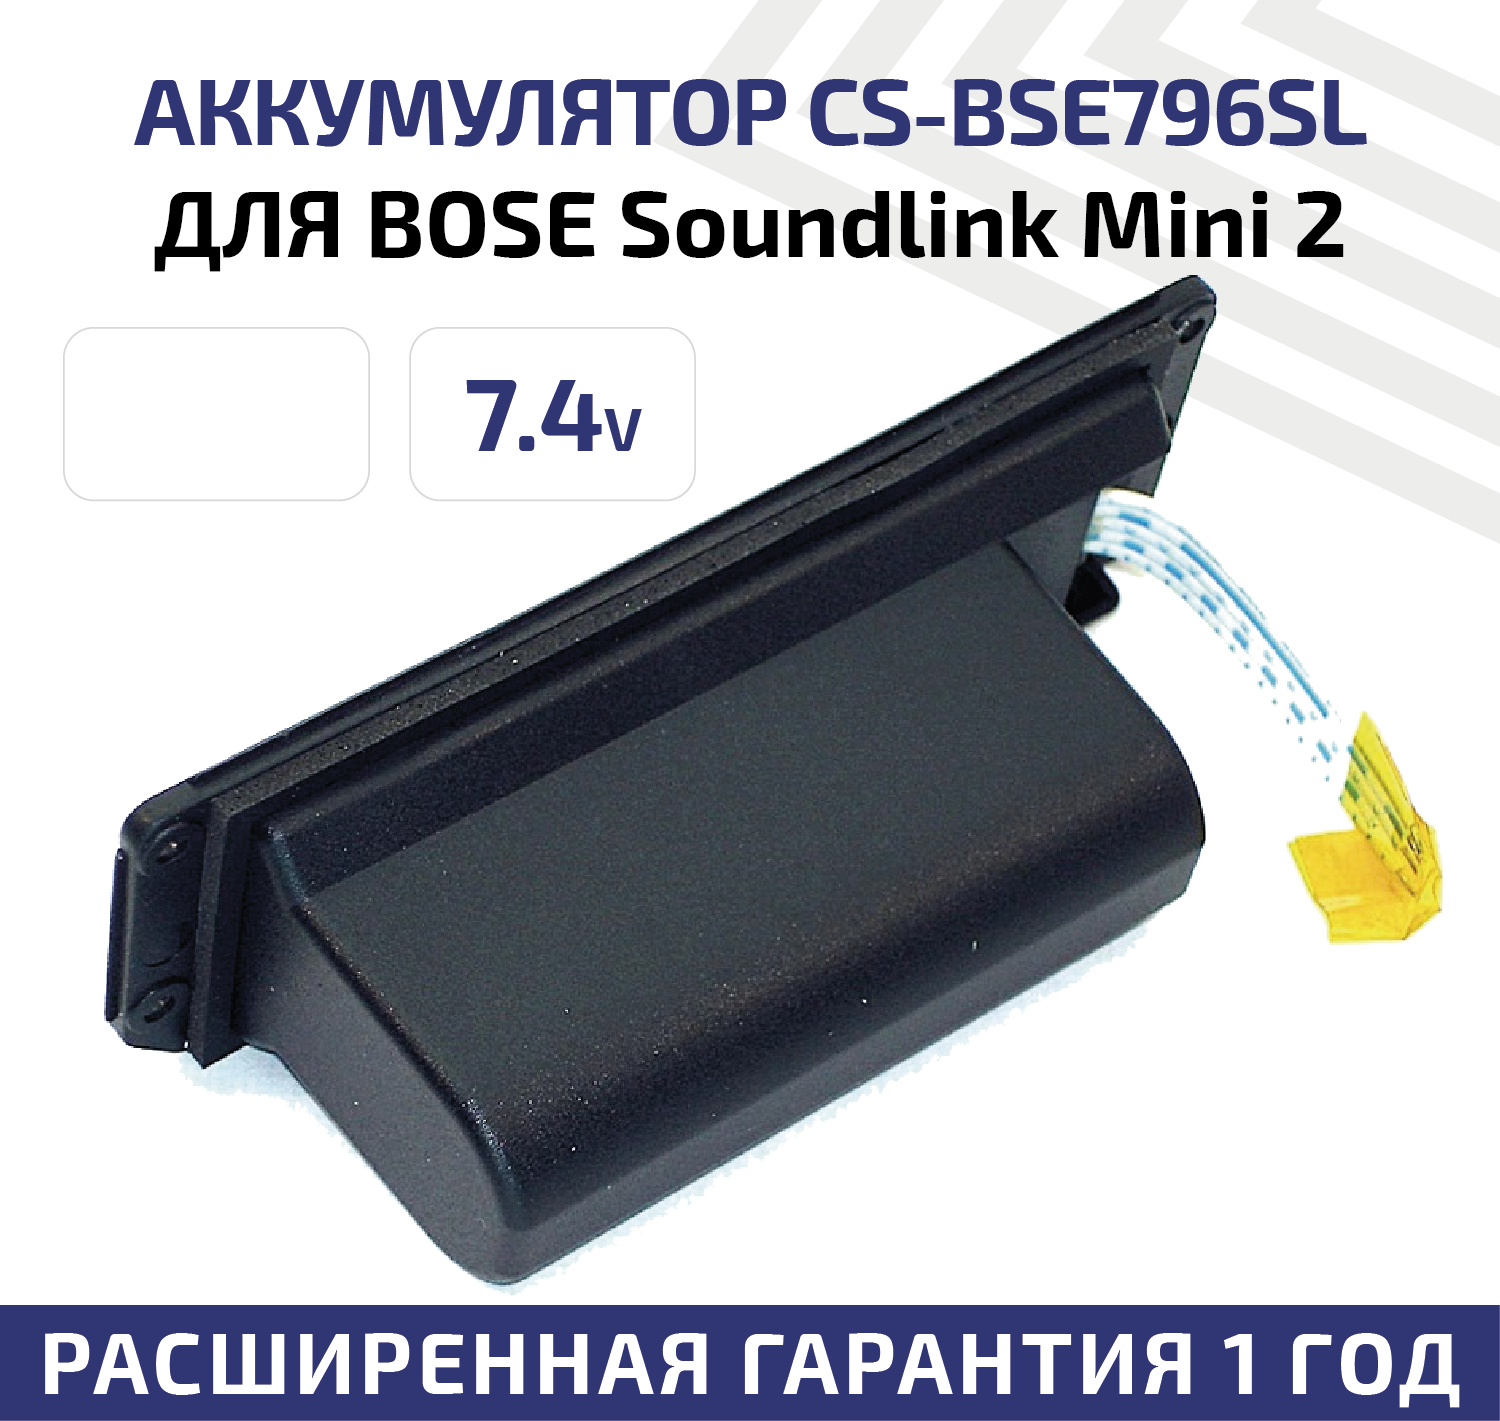 Аккумуляторная батарея (АКБ) CameronSino CS-BSE796SL для беспроводной музыкальной колонки Bose Soundlink Mini 2, 7.4В, 2200мАч, 16.28Вт, Li-Ion